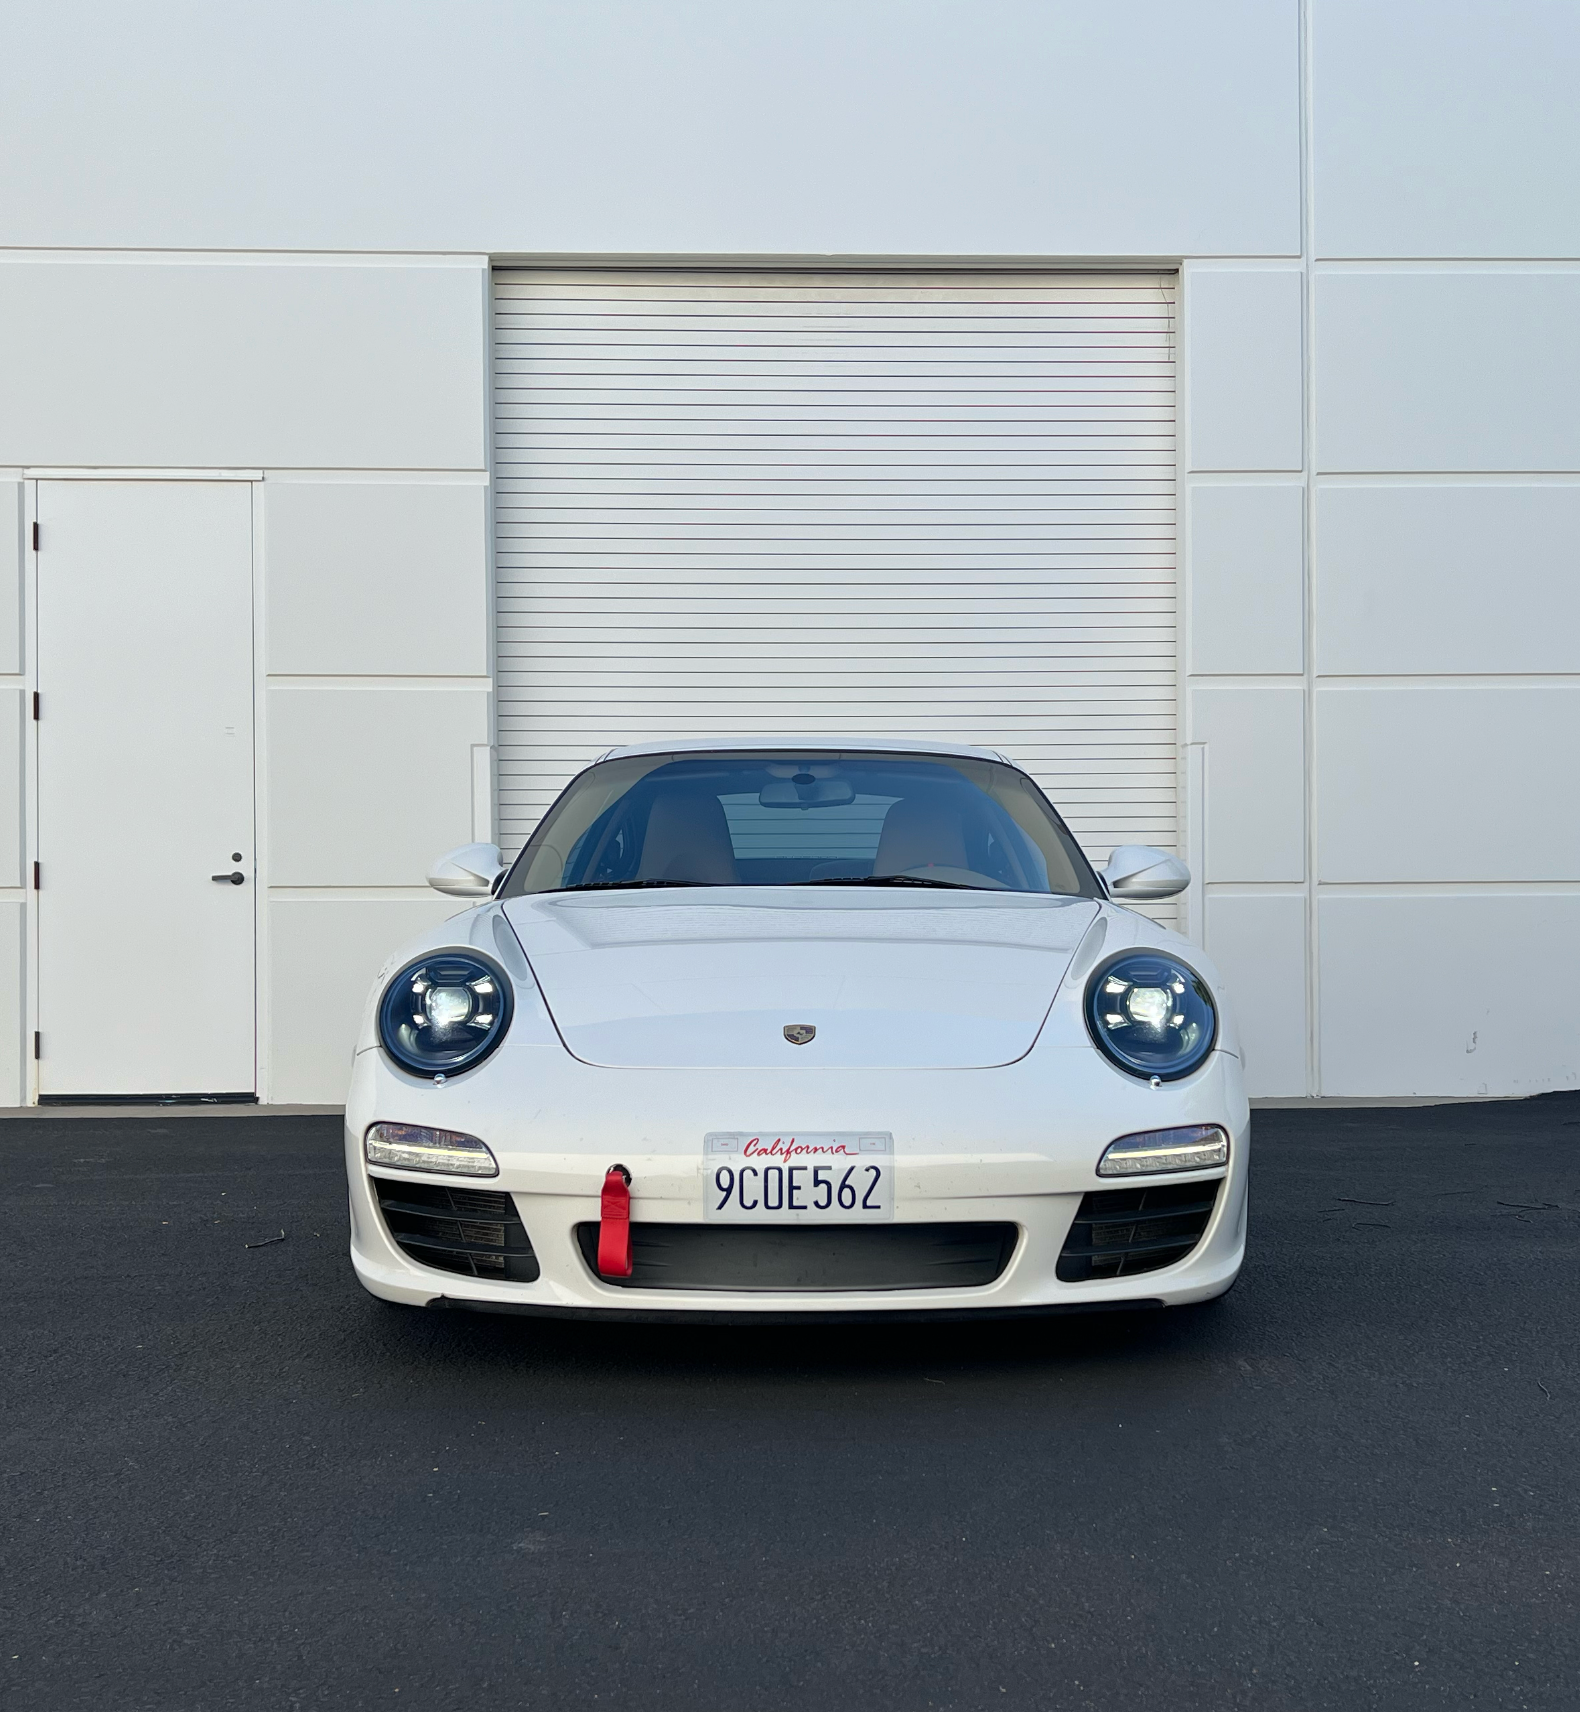 2011 Porsche 911 - 2011 997.2 Carrera White - w Porsche CPO Warranty - Used - VIN WP0AA2A90BS706192 - 69,000 Miles - 6 cyl - 2WD - Automatic - Coupe - White - Orange County, CA 92618, United States